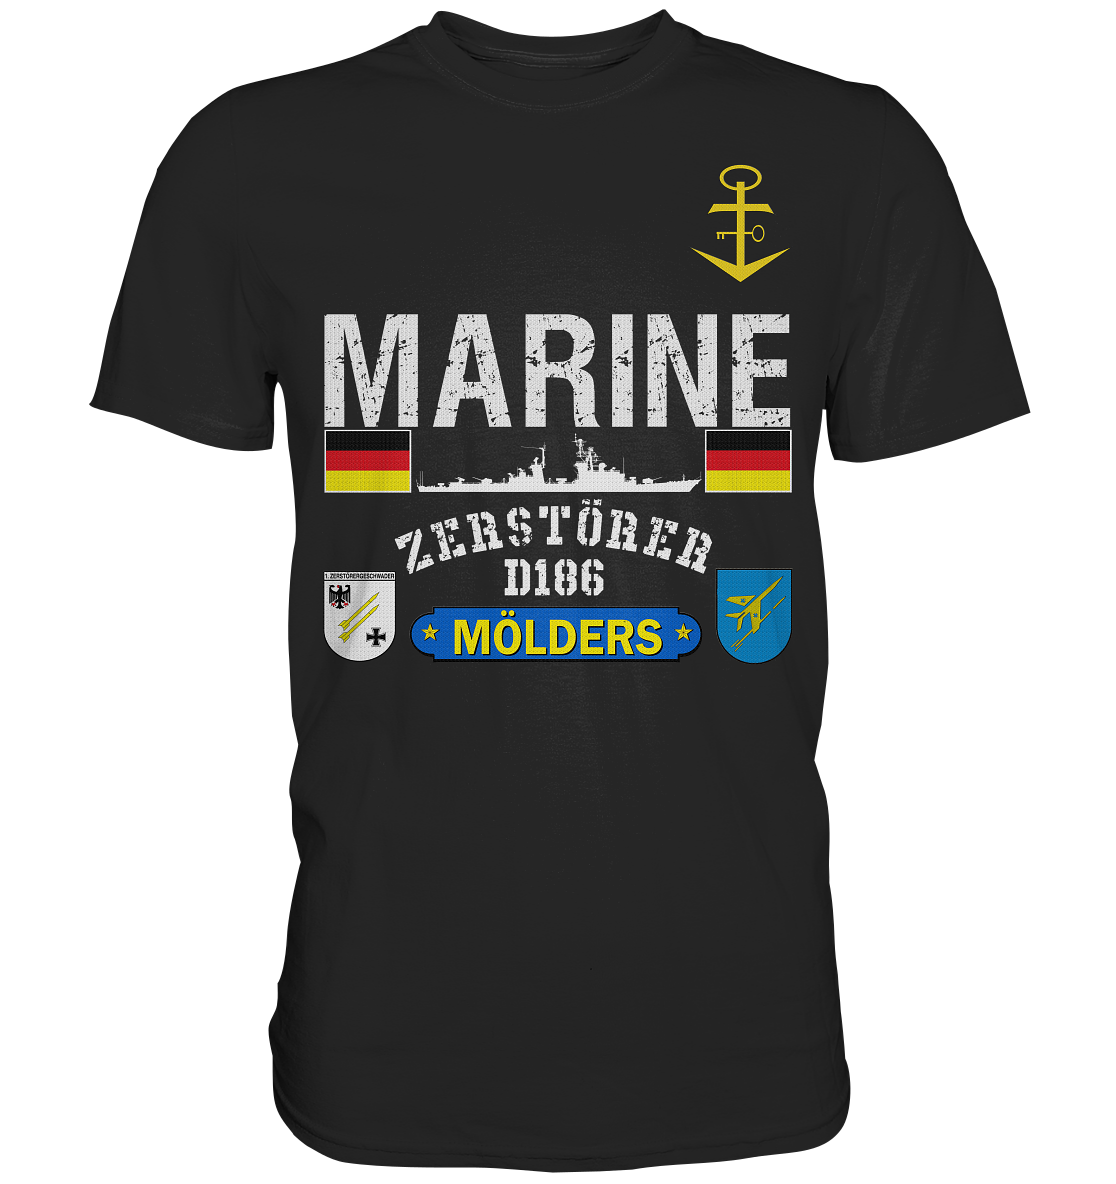 Marine D186 MÖLDERS 60er ATN - Premium Shirt